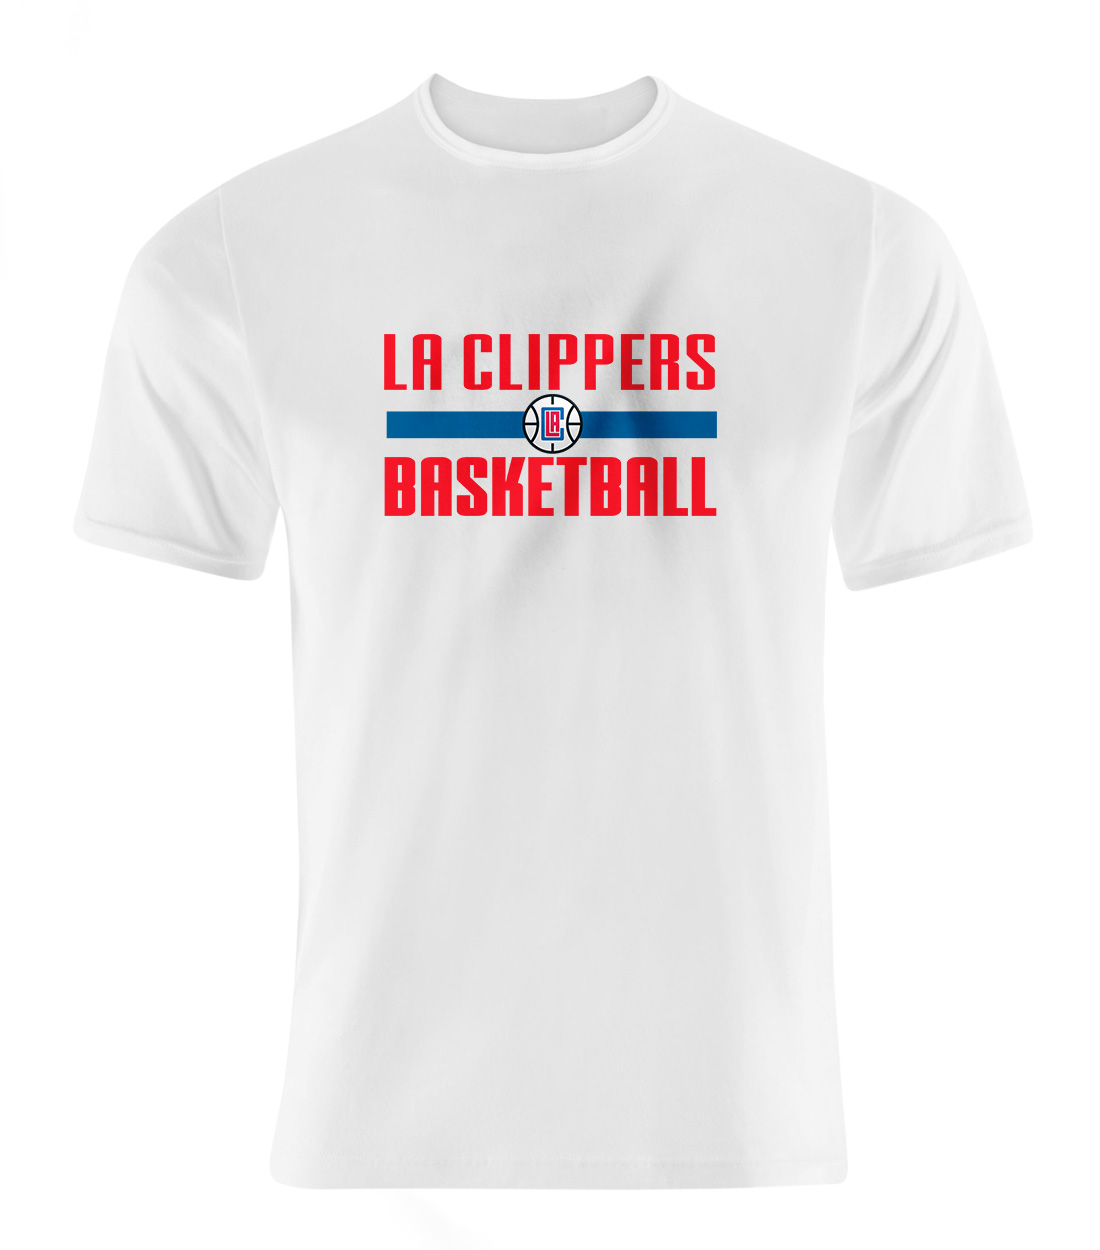 L.A. Clippers Basketball Tshirt (TSH-WHT-908)